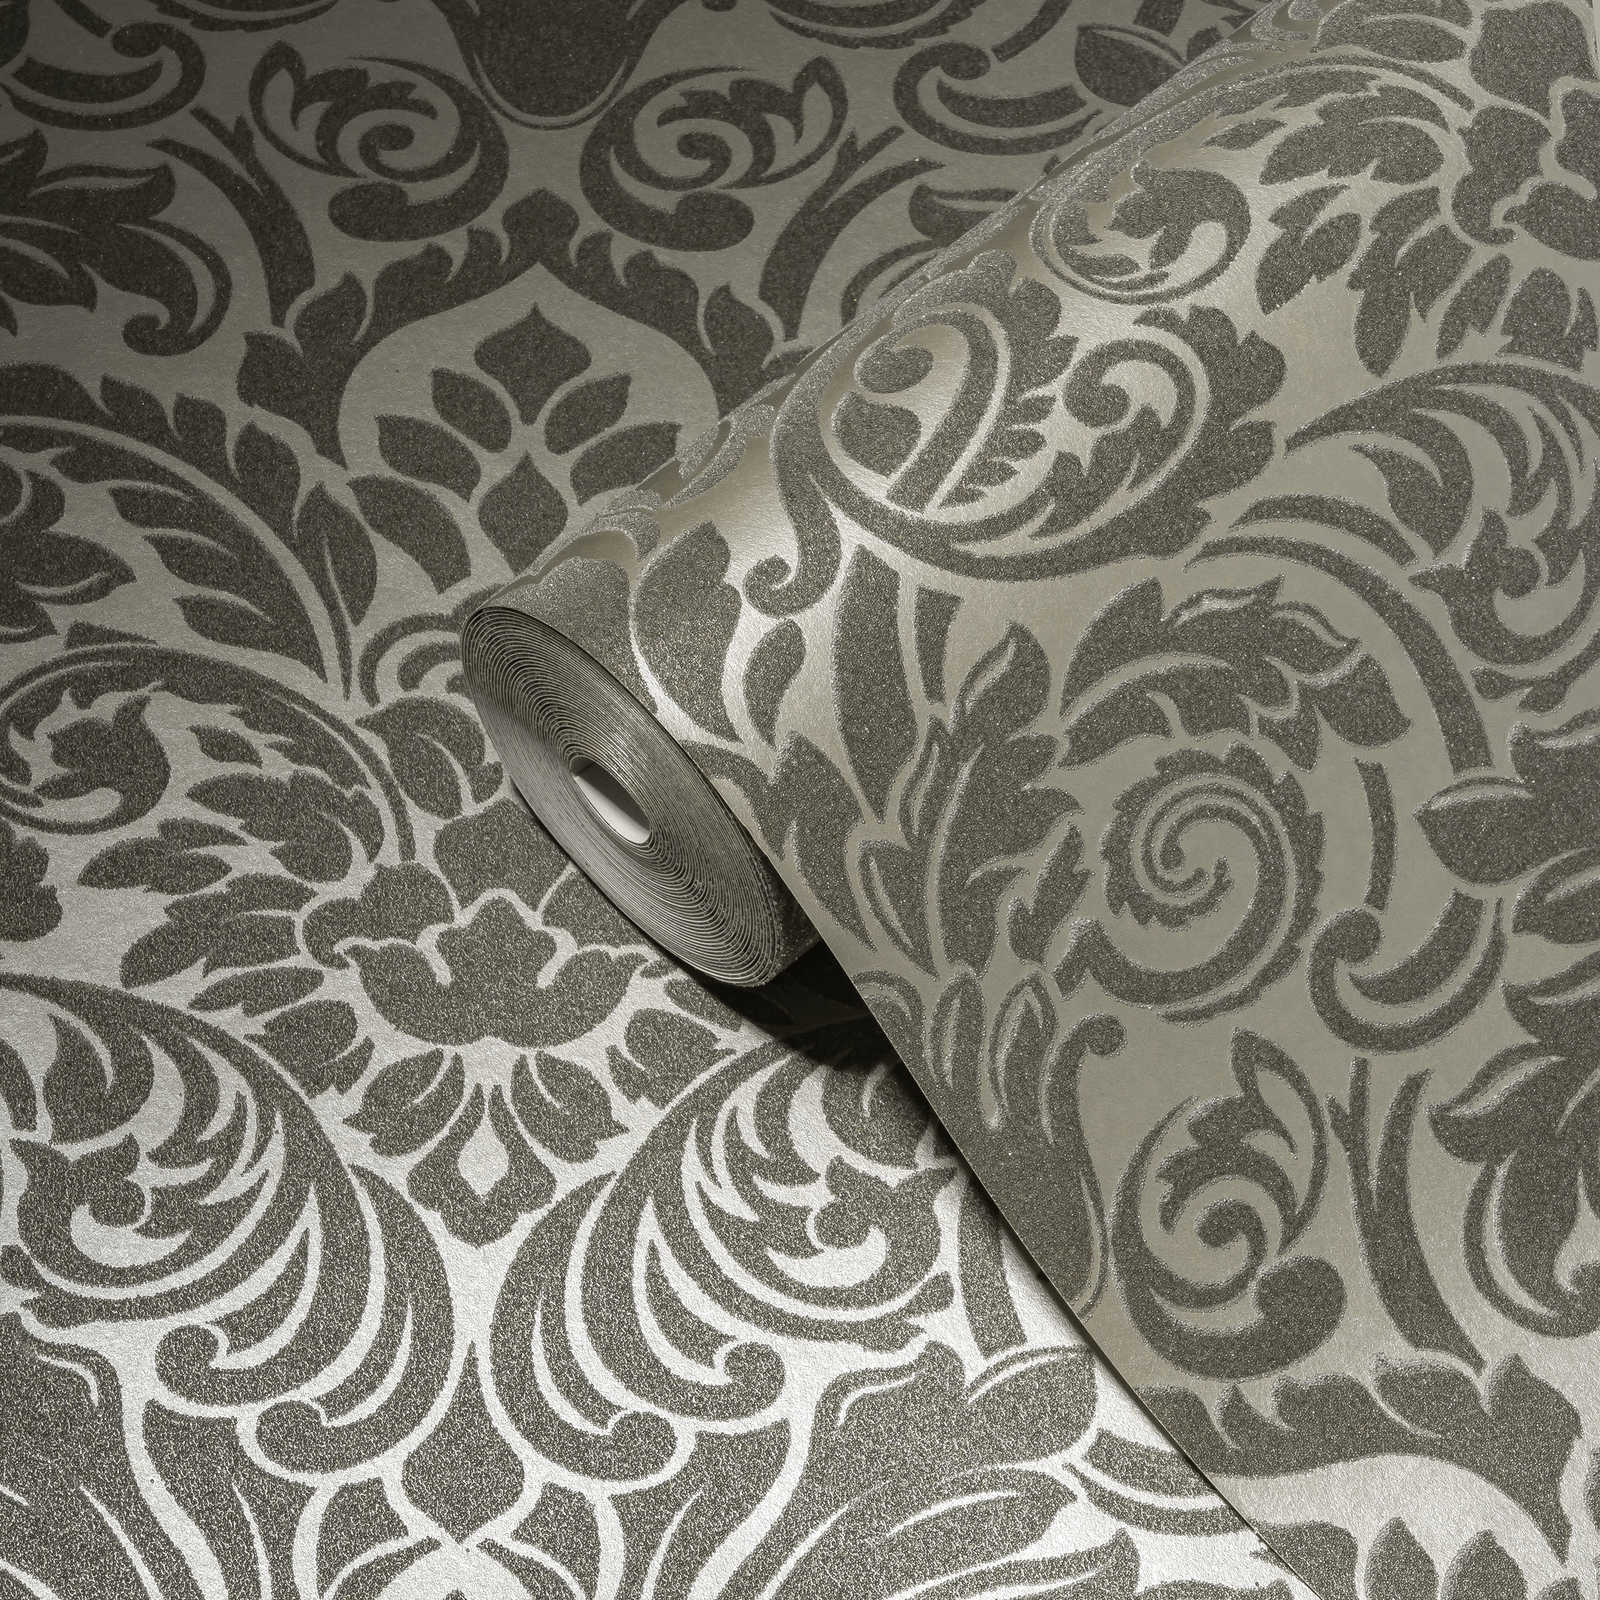             Ornamenteel behang met metallic effect & bloemmotief - zilver, grijs
        